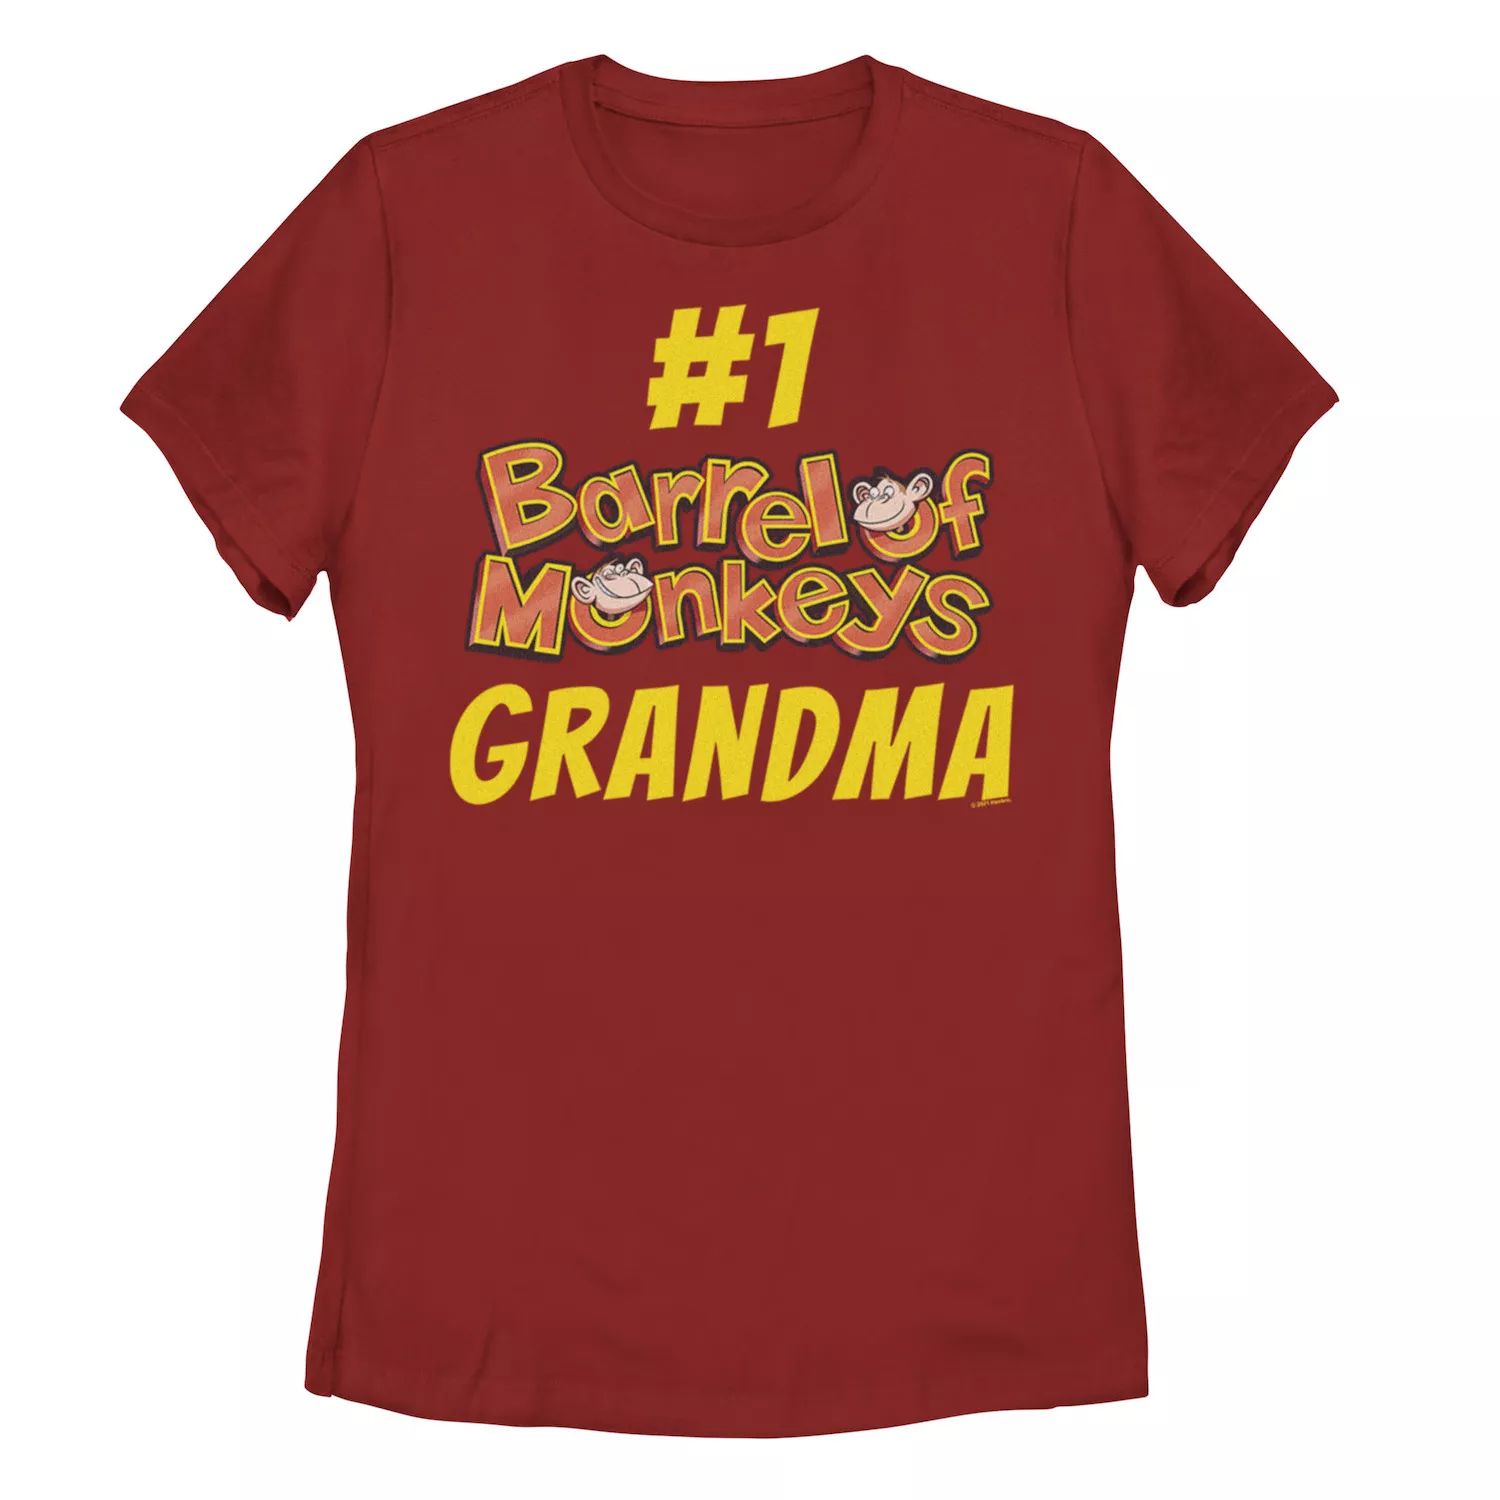 Футболка Barrel Of Monkeys #1 для юниоров с текстовым сообщением «Бабушка» Licensed Character